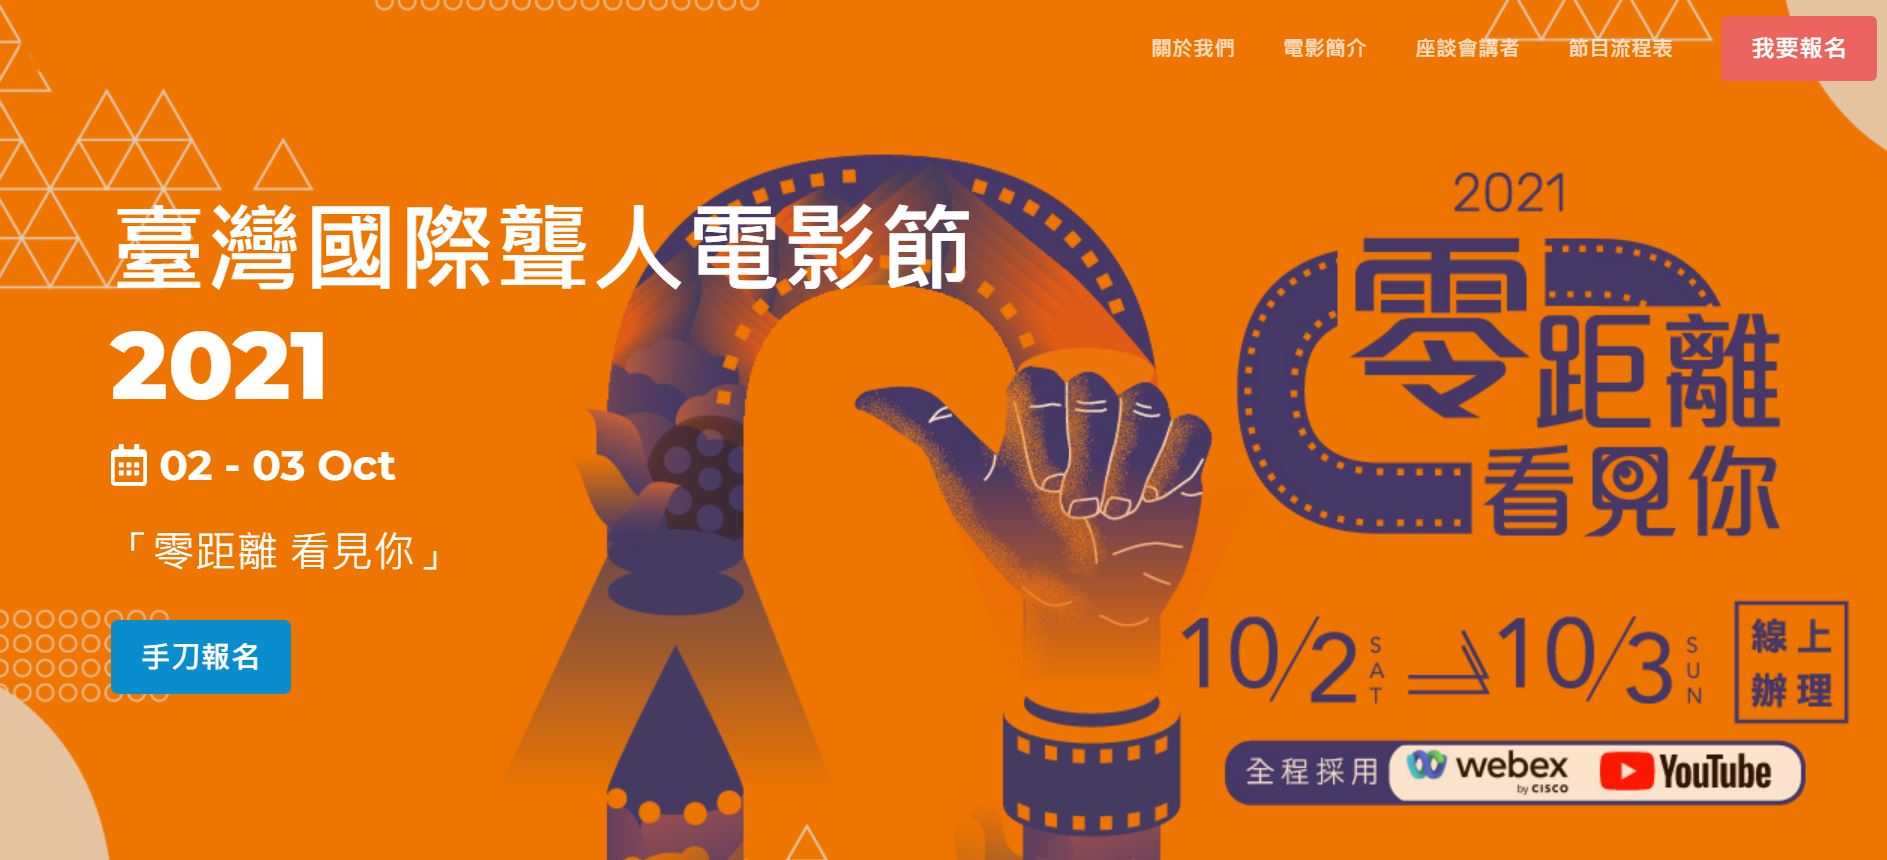 2021 Taiwan International Deaf Film Festival, “No Distance Between Us”. 2021 Taiwan International Deaf Film Festival